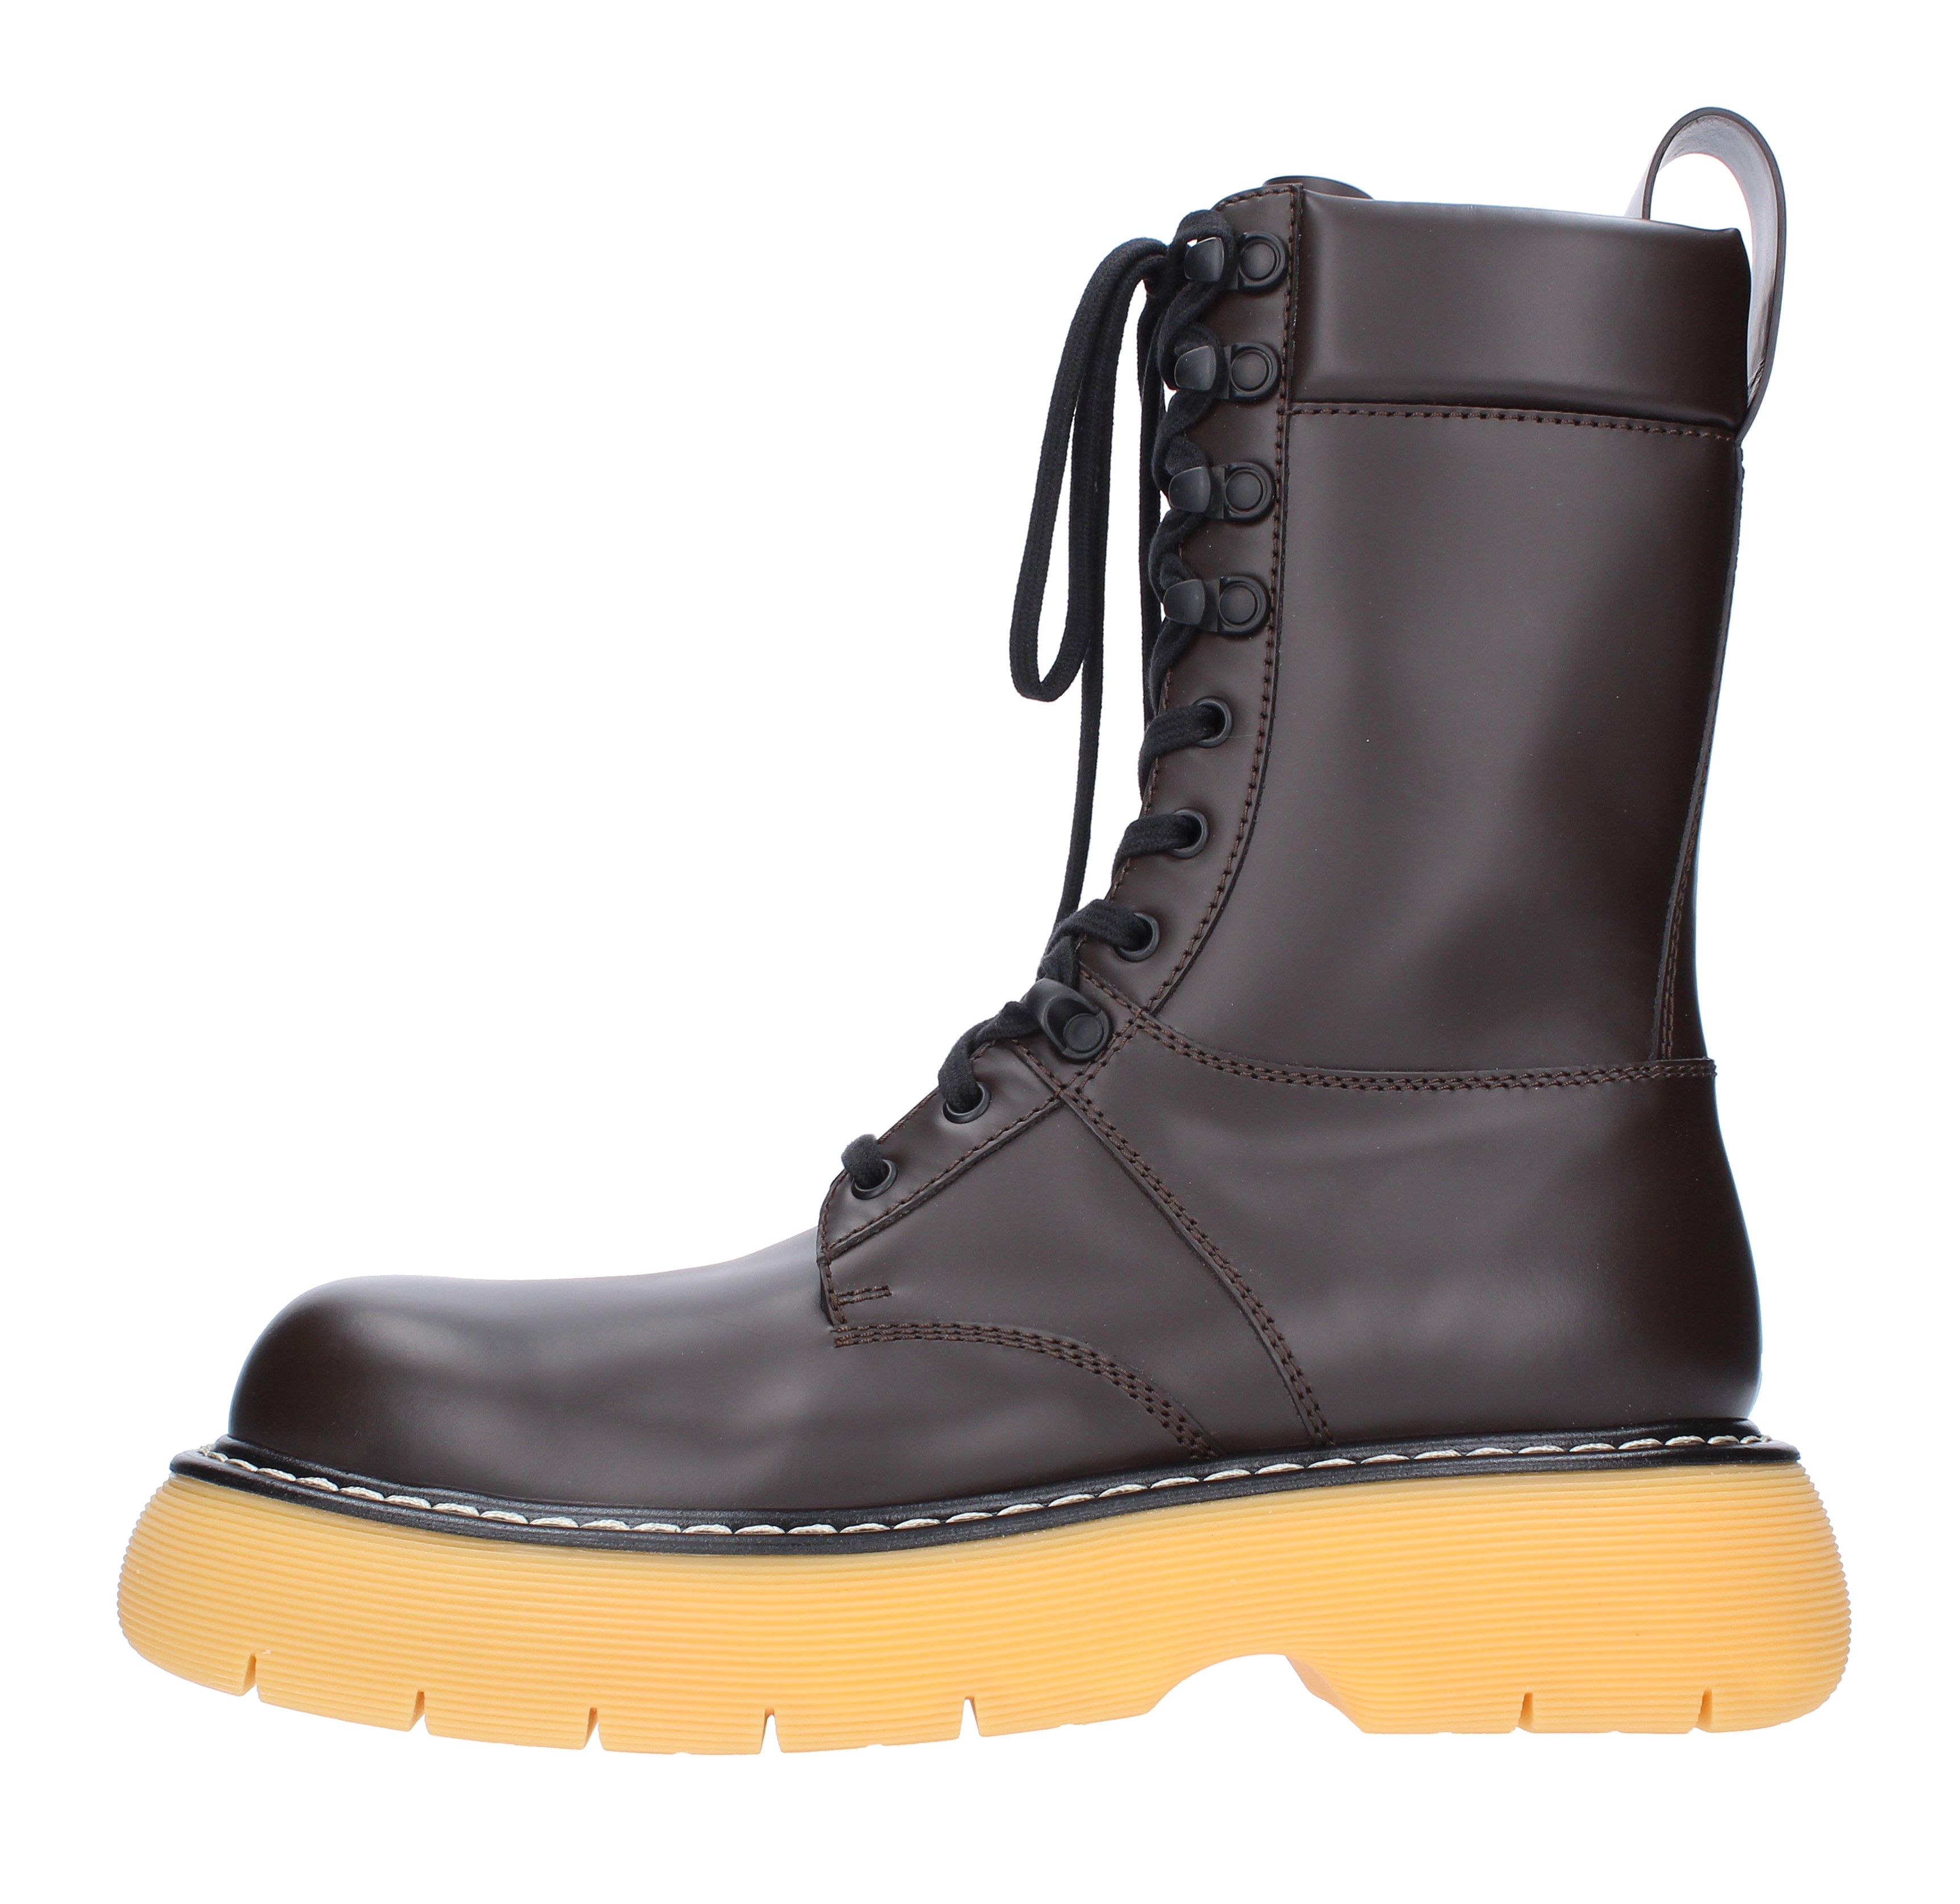 BOTTEGA VENETA anfibi boots item 651260 in leather - BOTTEGA VENETA -  Ginevra calzature